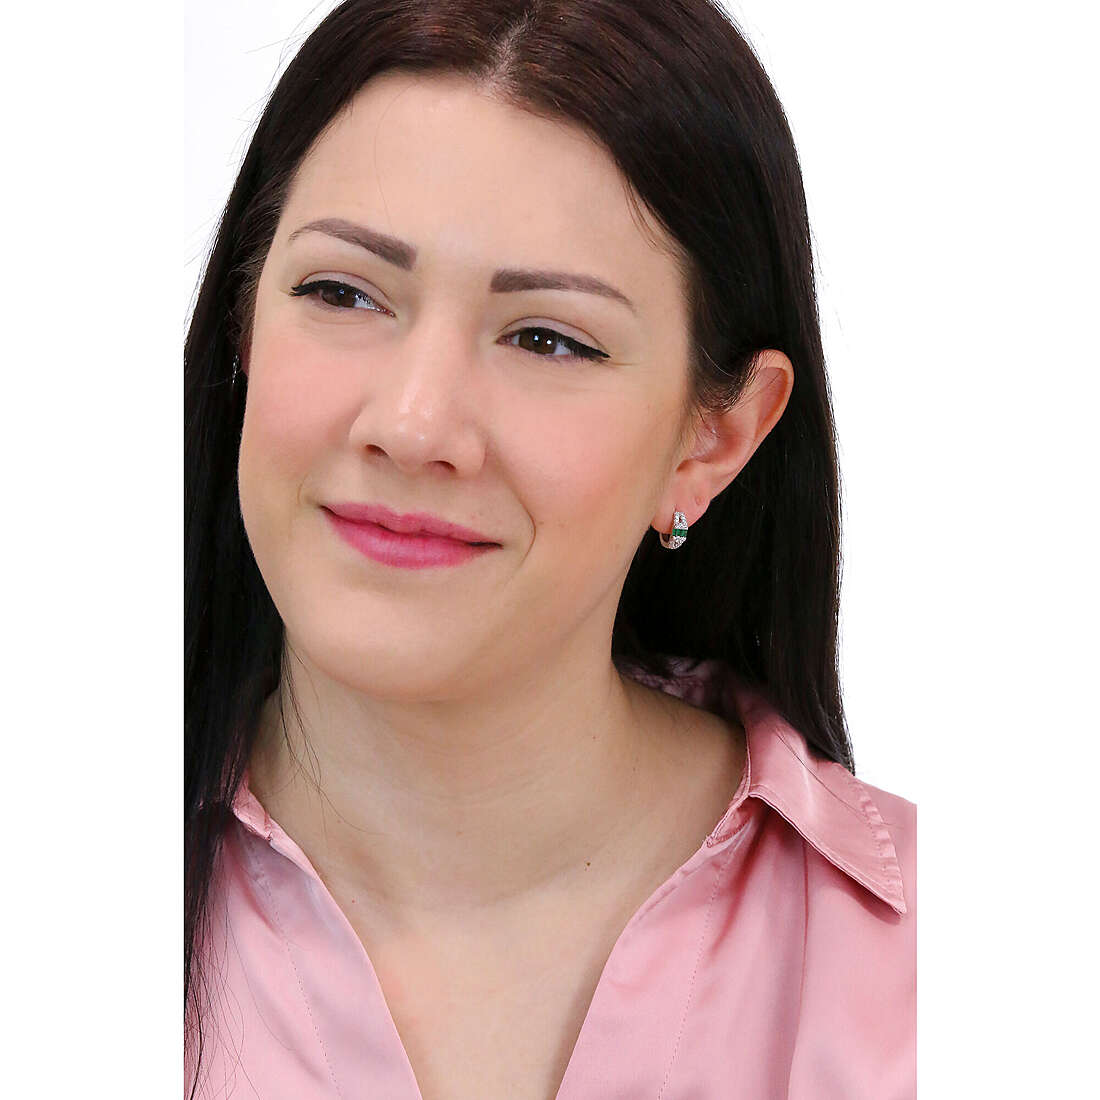 GioiaPura earrings woman ST67946-RHVE wearing